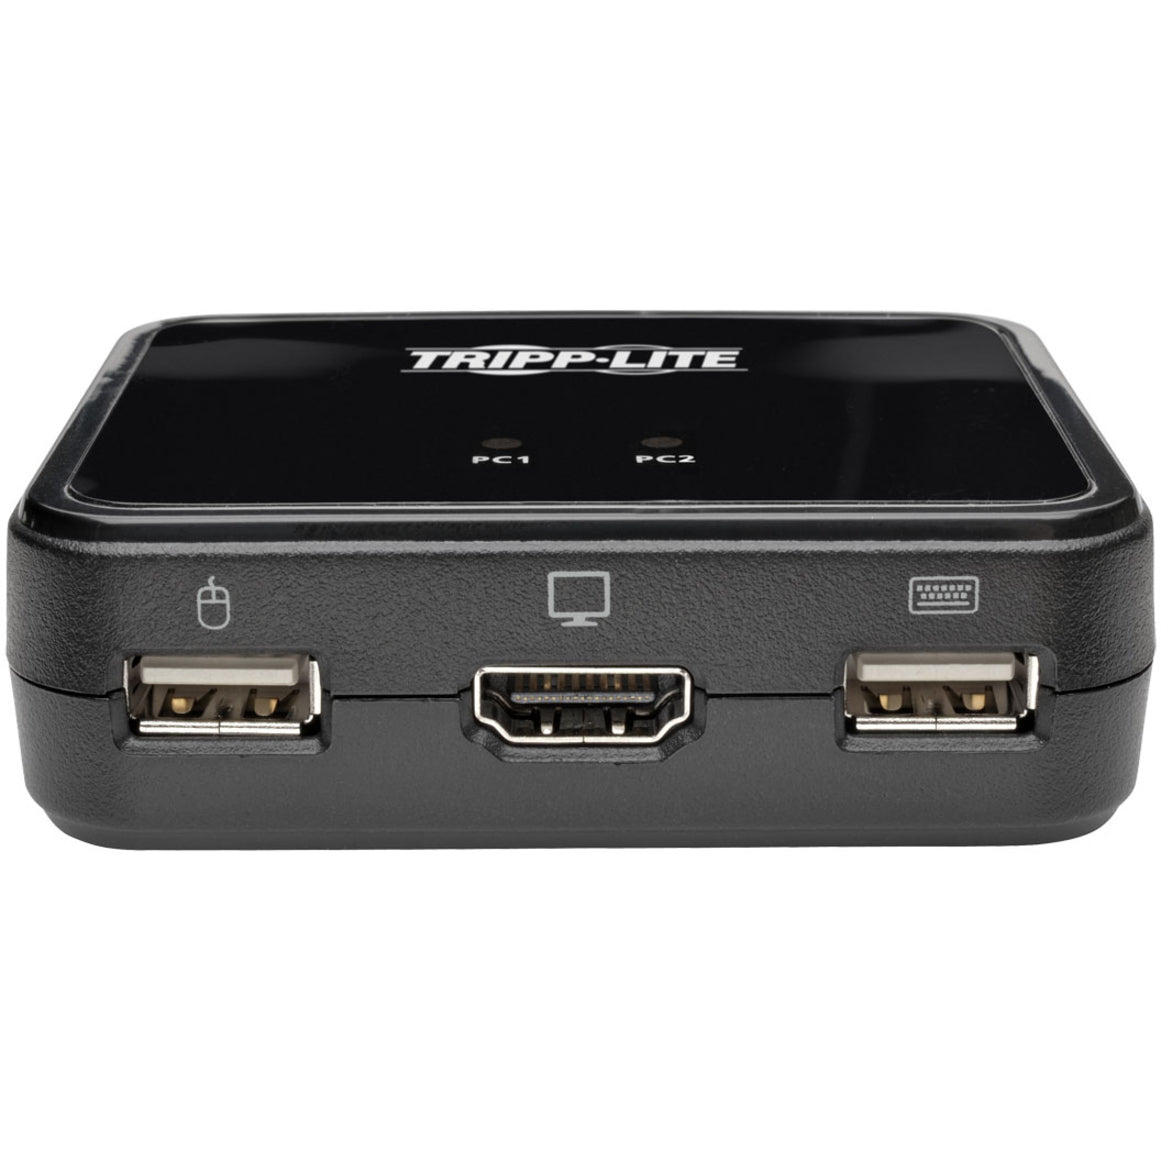 Tripp Lite B032-HUA2 2-Port USB/HD Cable KVM Switch, 1920 x 1200 Maximum Video Resolution, 3 Year Limited Warranty